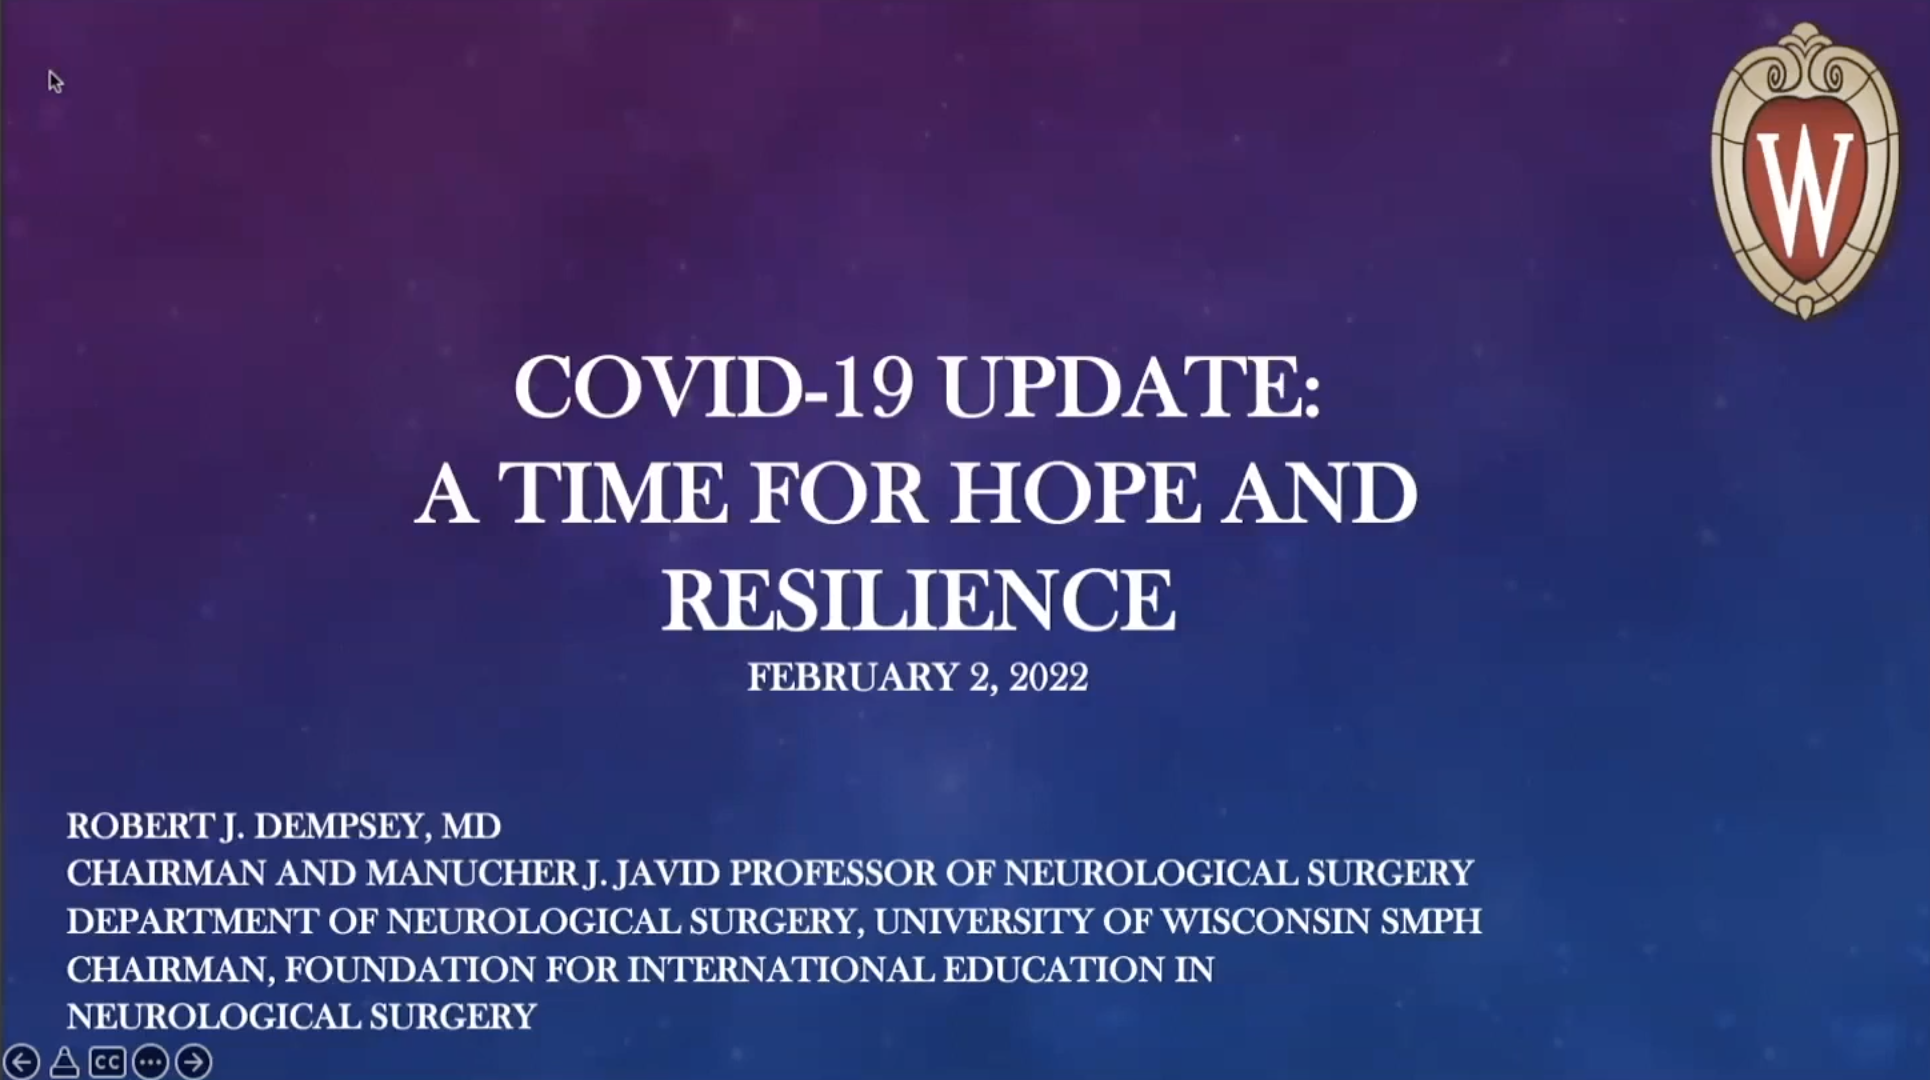 Covid Update Feb 2, 2022